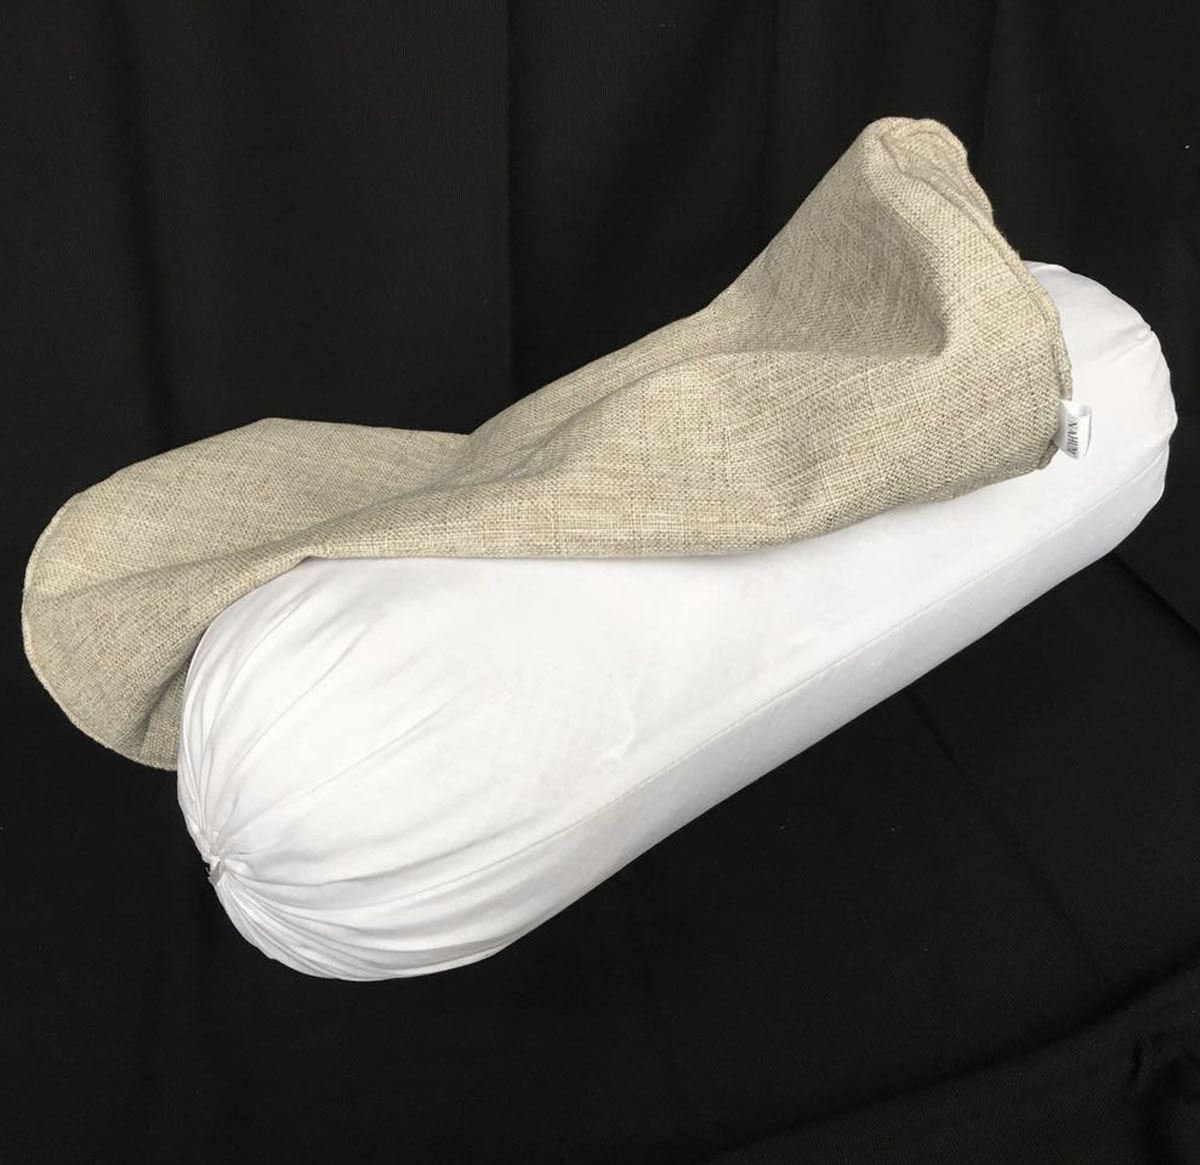 EN01g Yoga Round Bolster maternity Pillow Cotton linen Neck Headrest body pillow Bed Chair Car Seat Backrest Sleeping cushion